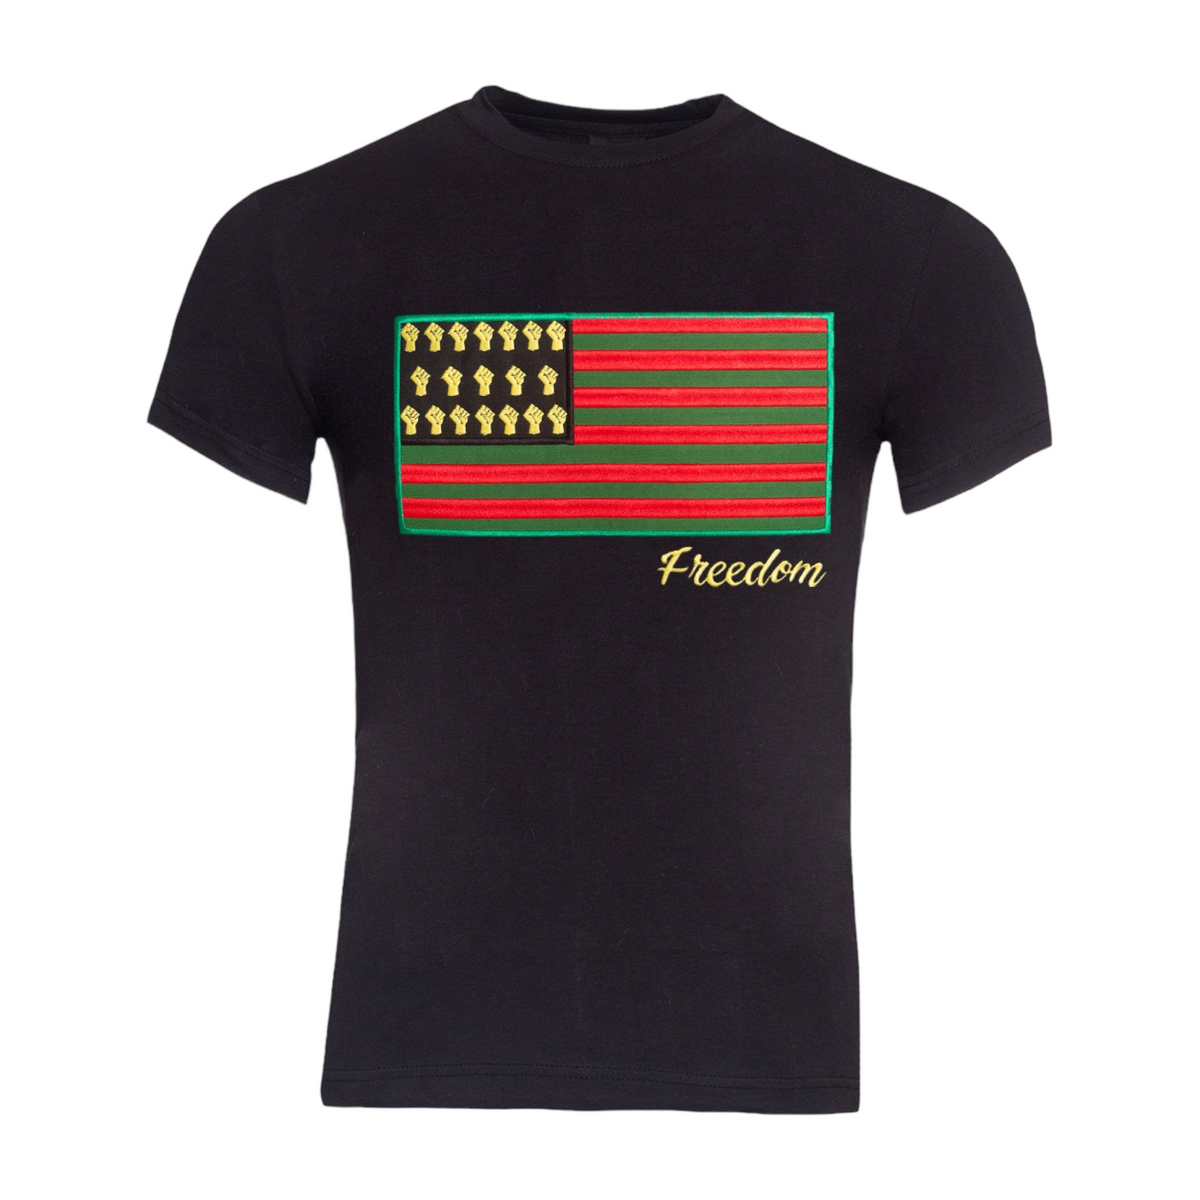 MDB Brand Women's Freedom T-Shirt